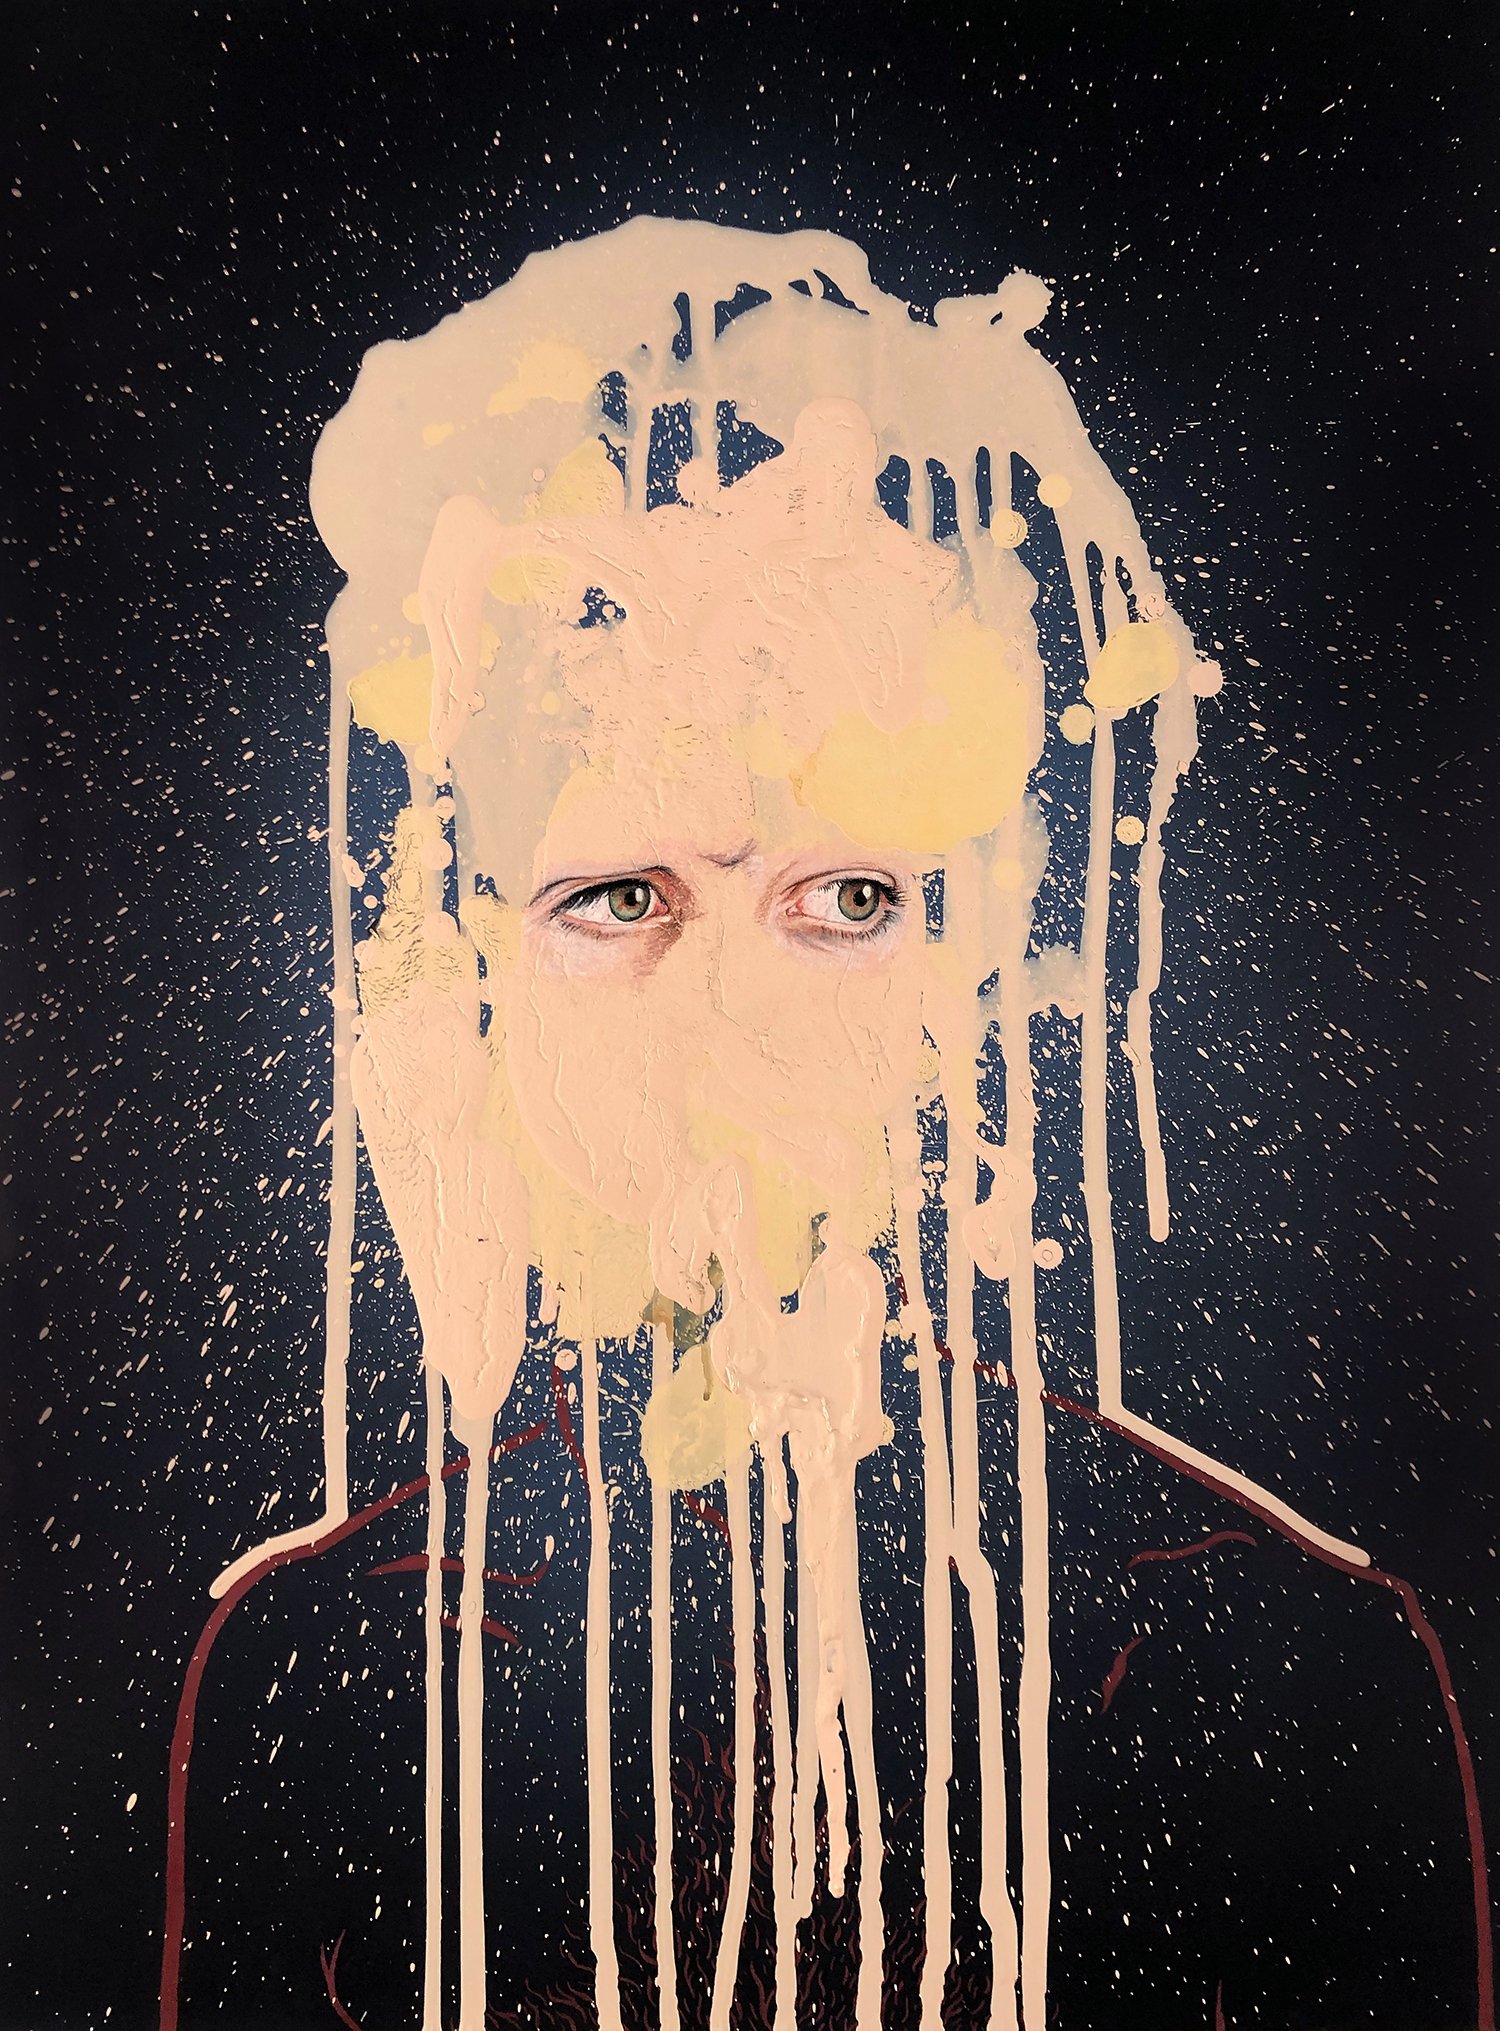  Self Portrait (White Man), 2020. Colored pencil, acrylic gesso, &amp; house paint, 32 x 24” 